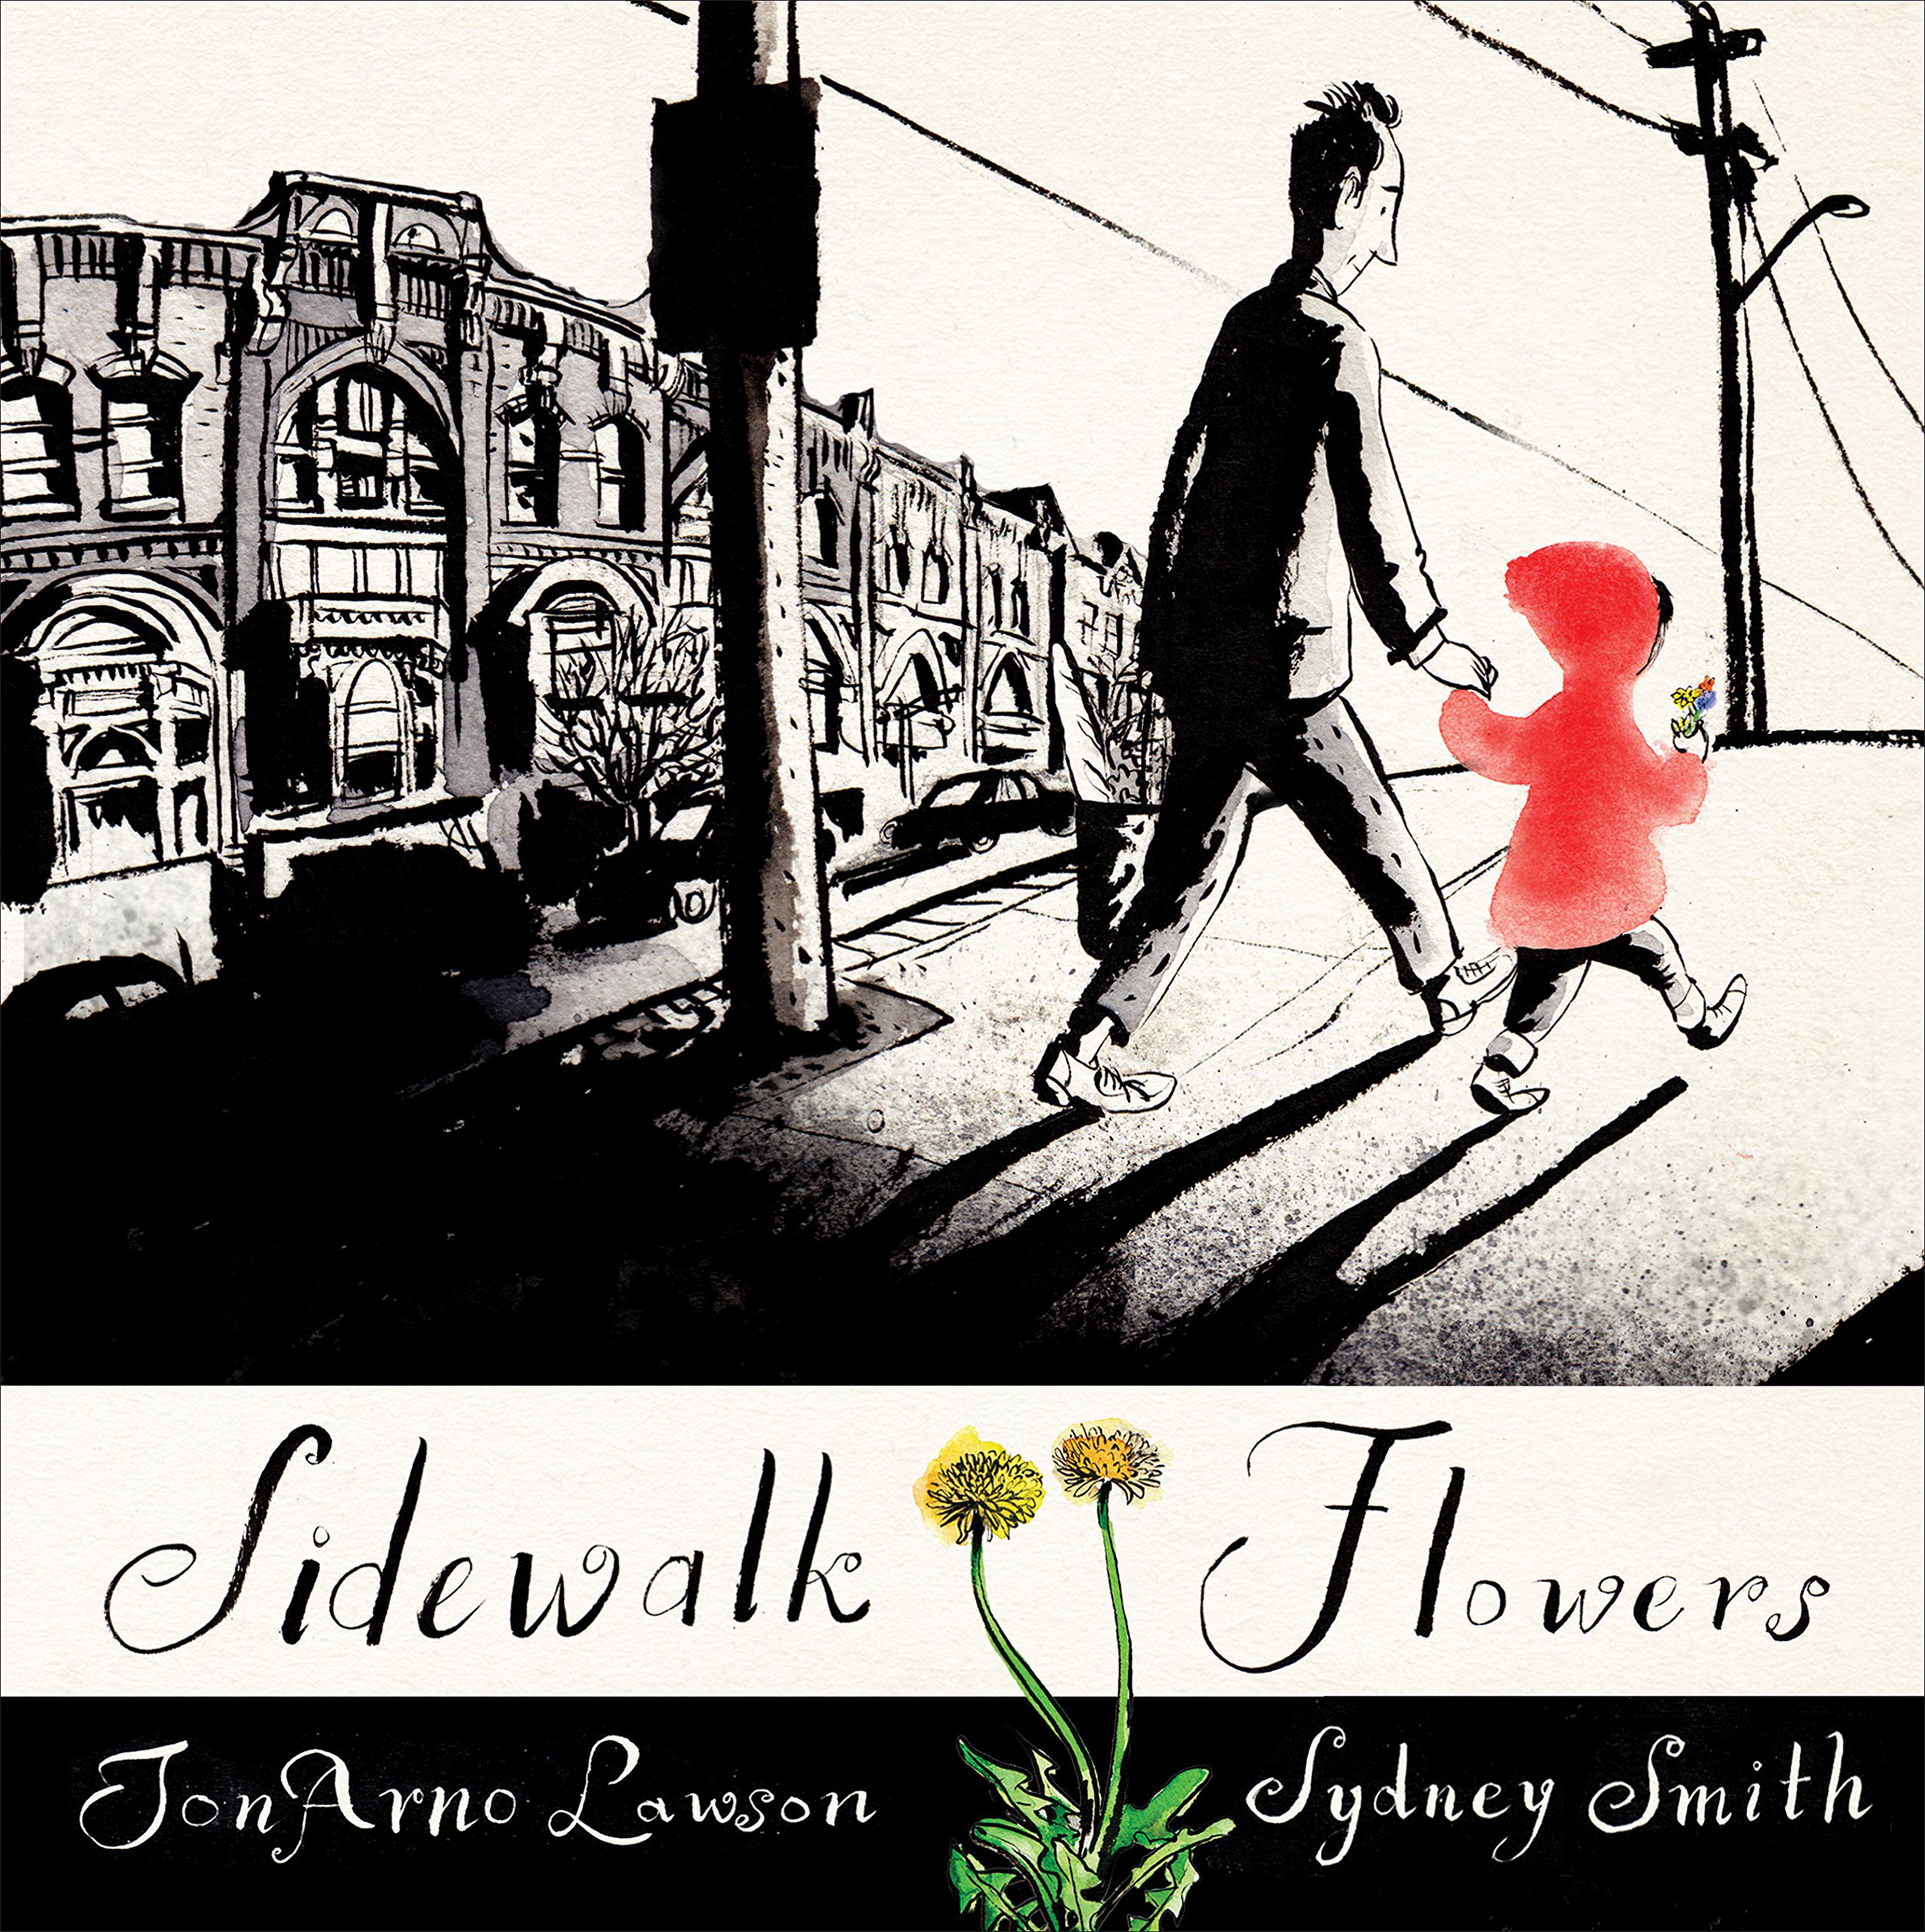 JonArno Lawson & Sydney Smith, Sidewalk Flowers (2015)